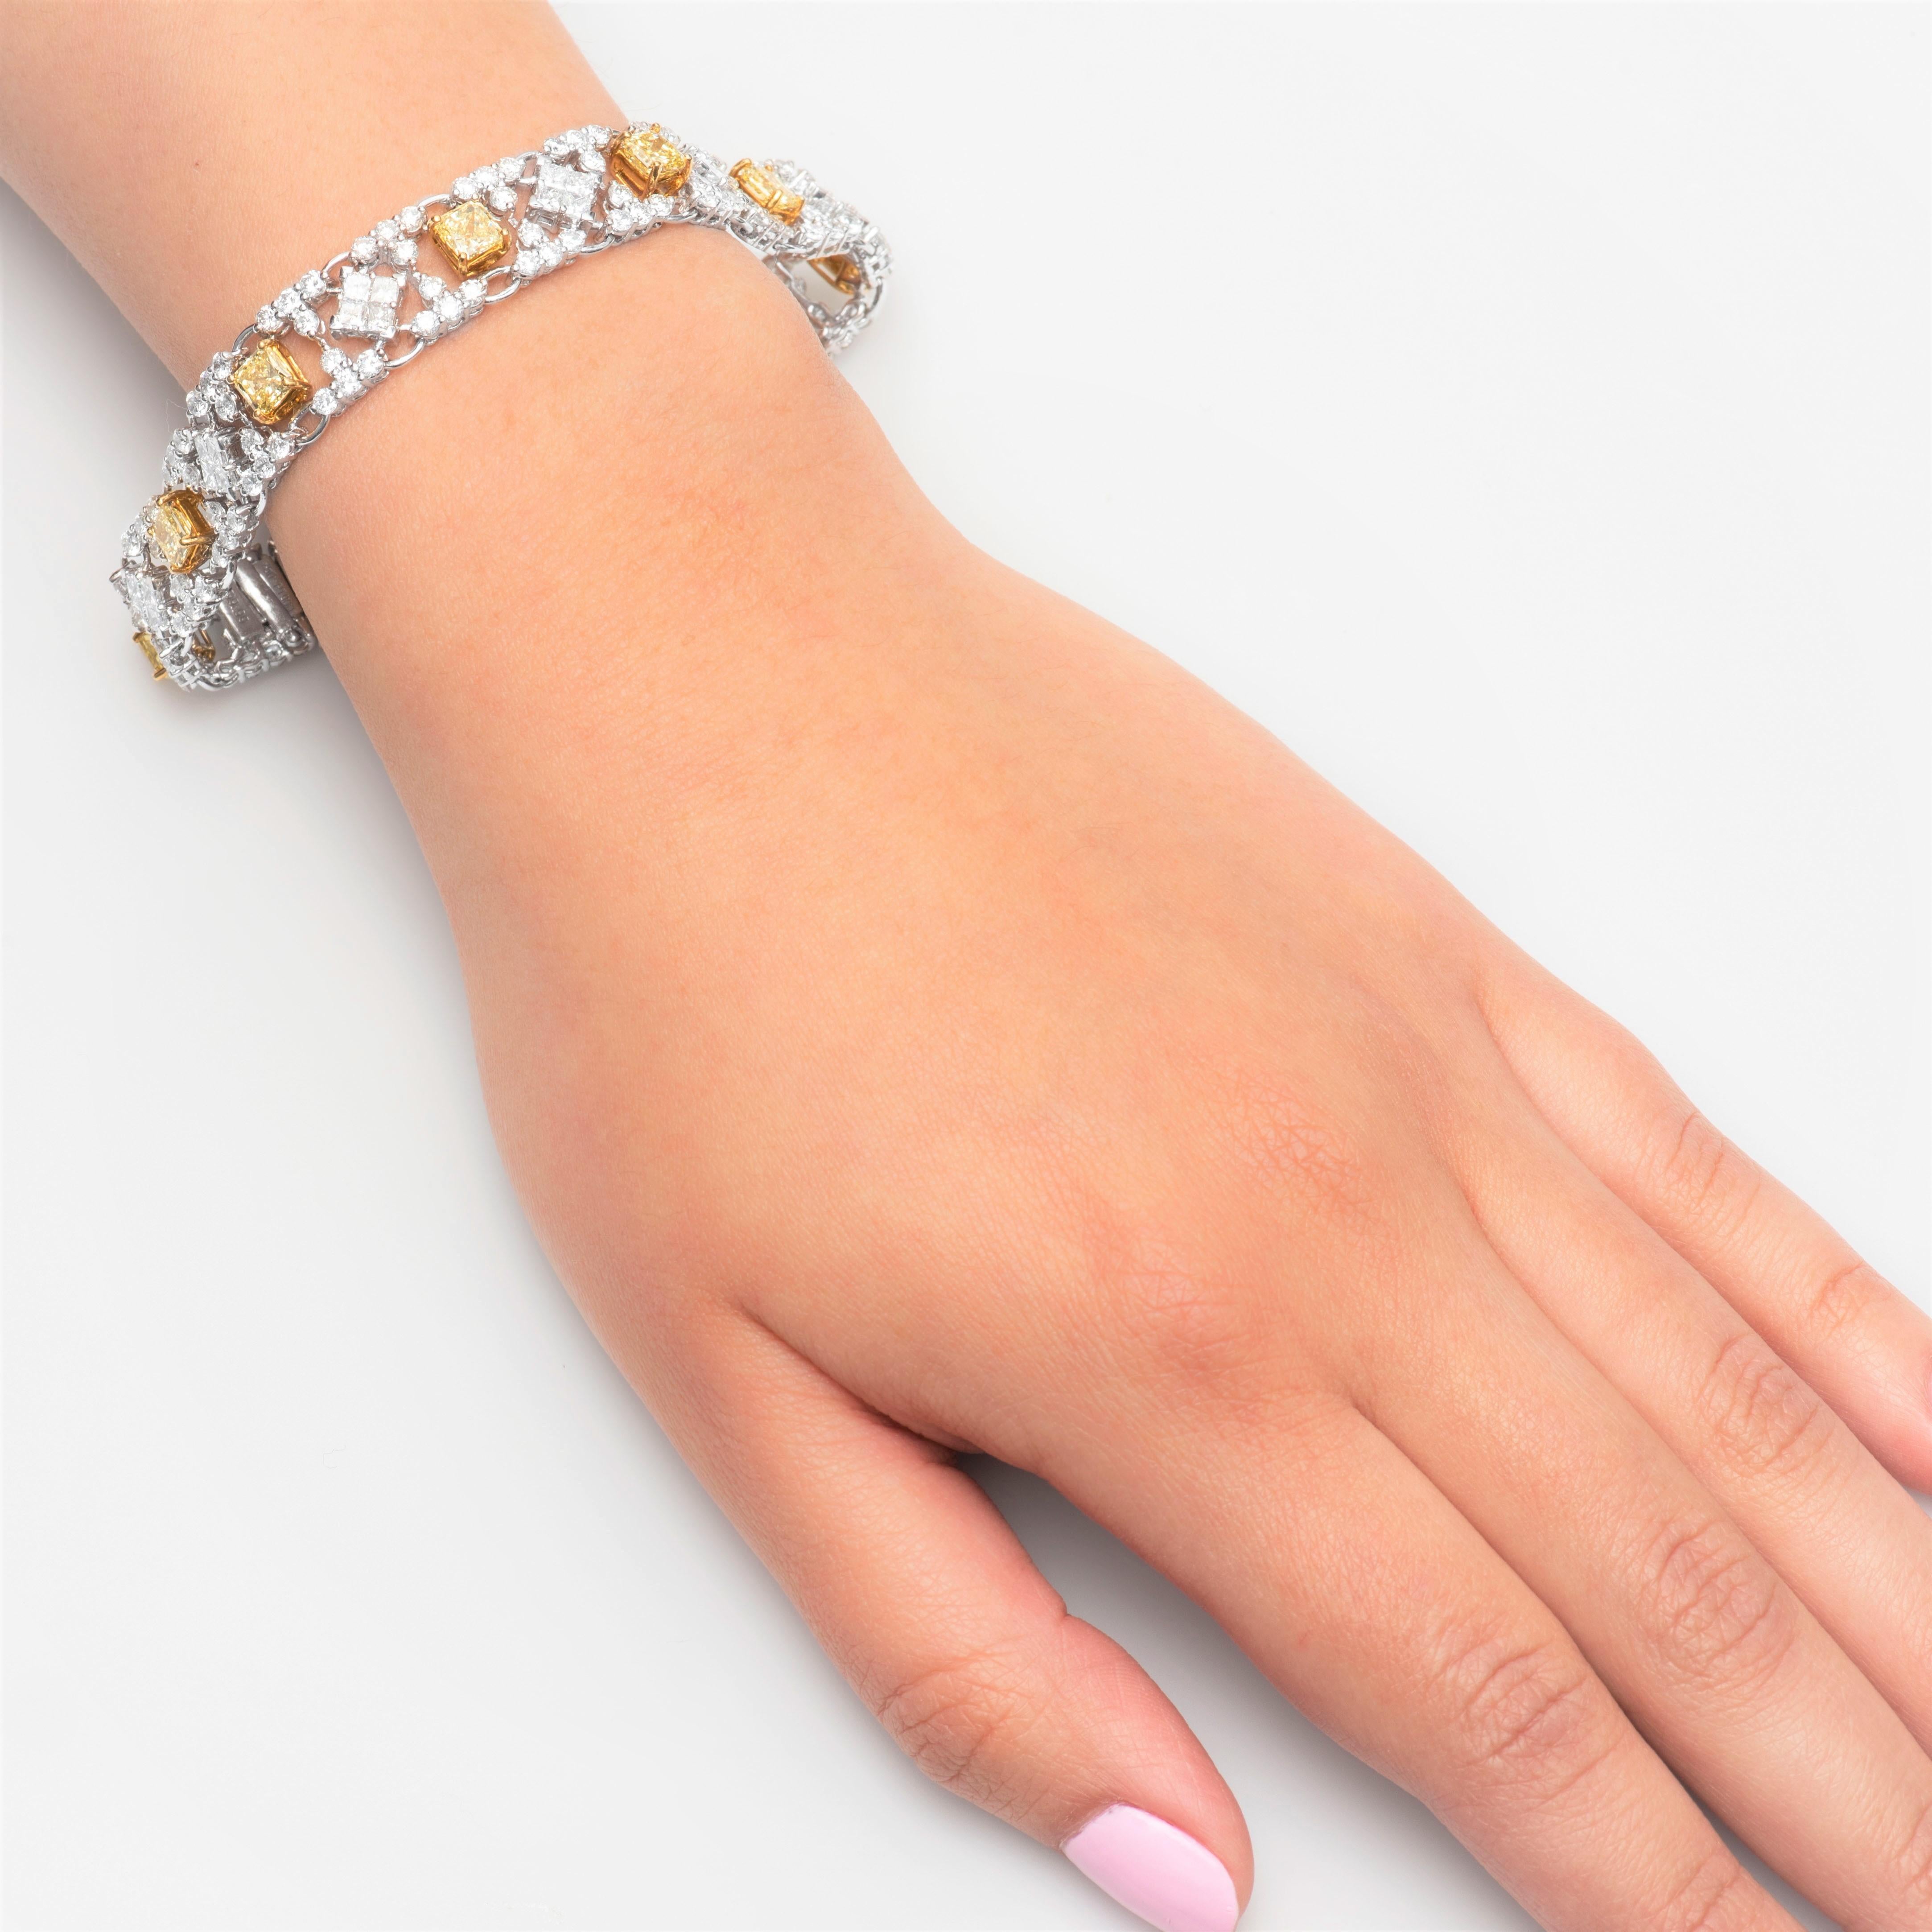 Modernes, einzigartiges und wunderschönes Armband mit 10 natürlichen gelben Diamanten im Strahlenschliff mit einem Gesamtgewicht von 6,20 Karat, umgeben von 9,99 Karat weißen Diamanten. Die gelben Diamanten sind in 18 Karat Gelbgold und die weißen